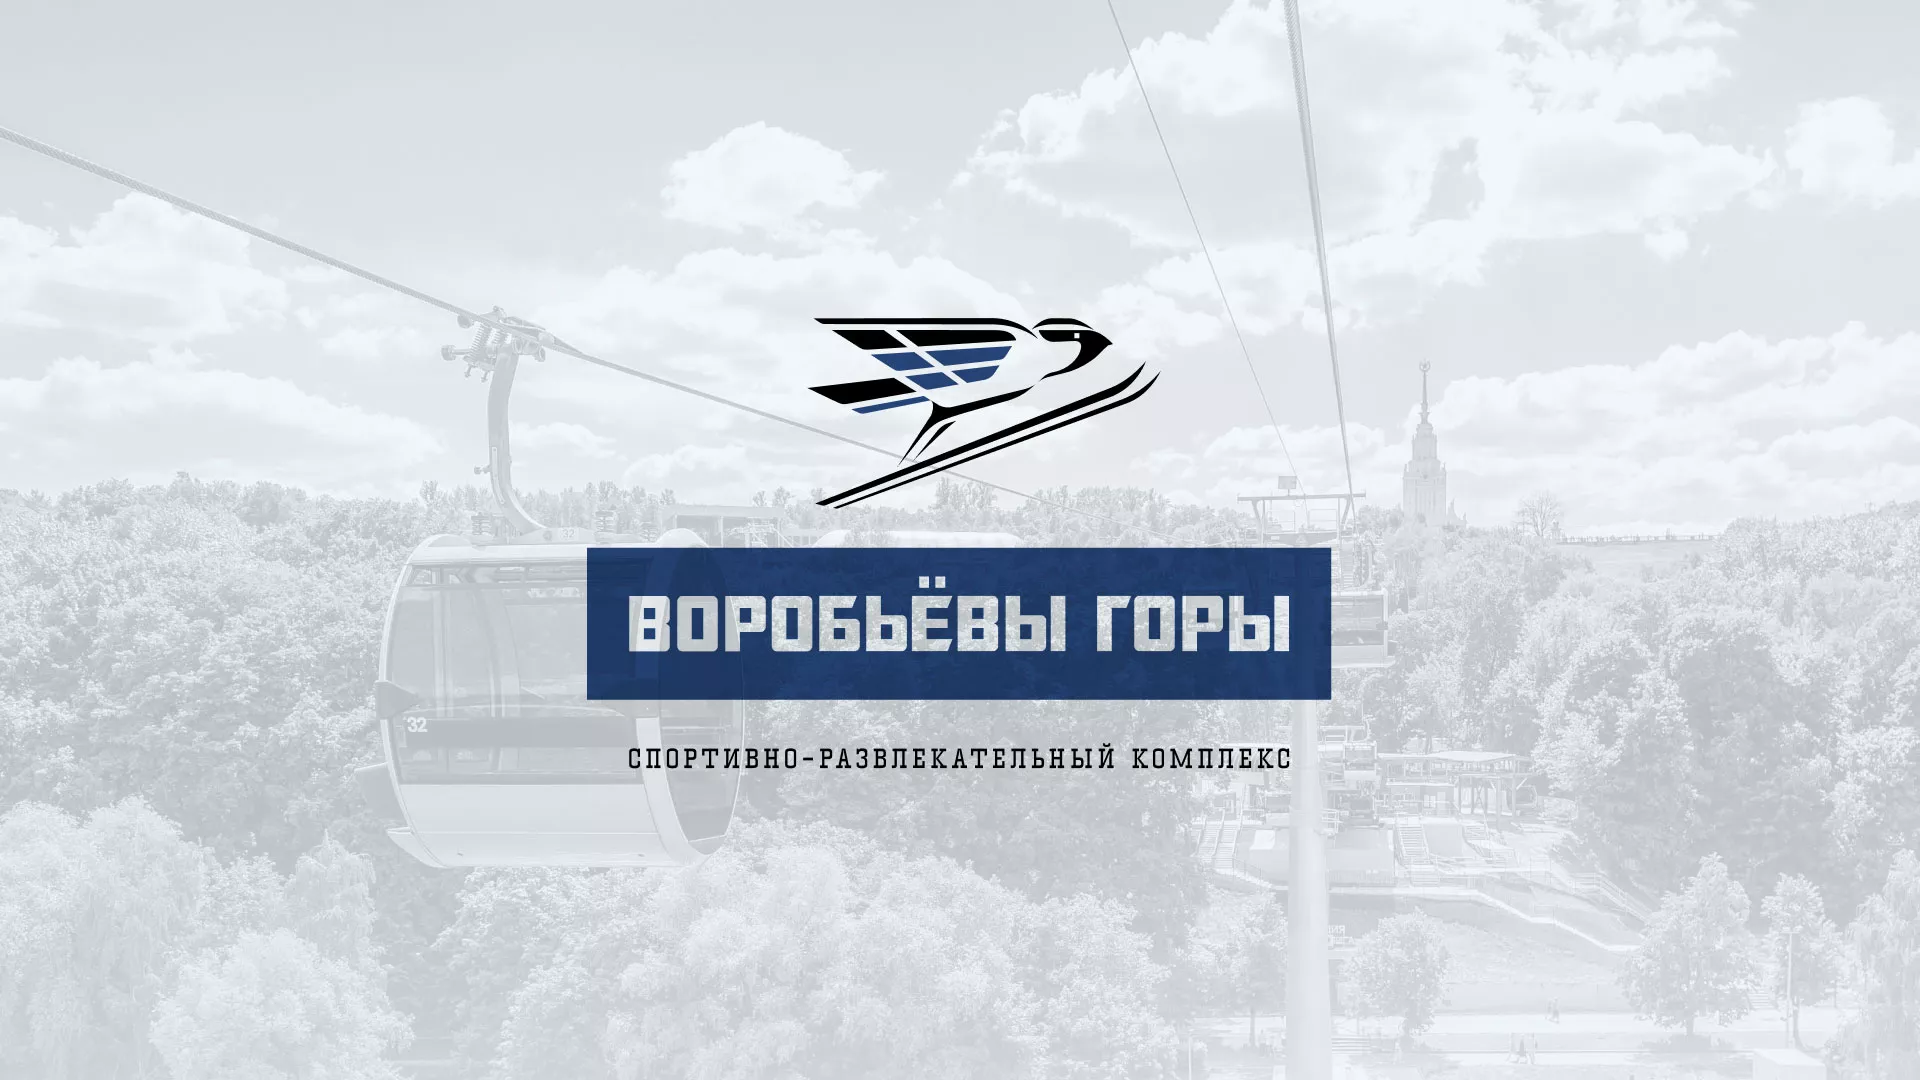 Разработка сайта в Приморске для спортивно-развлекательного комплекса «Воробьёвы горы»